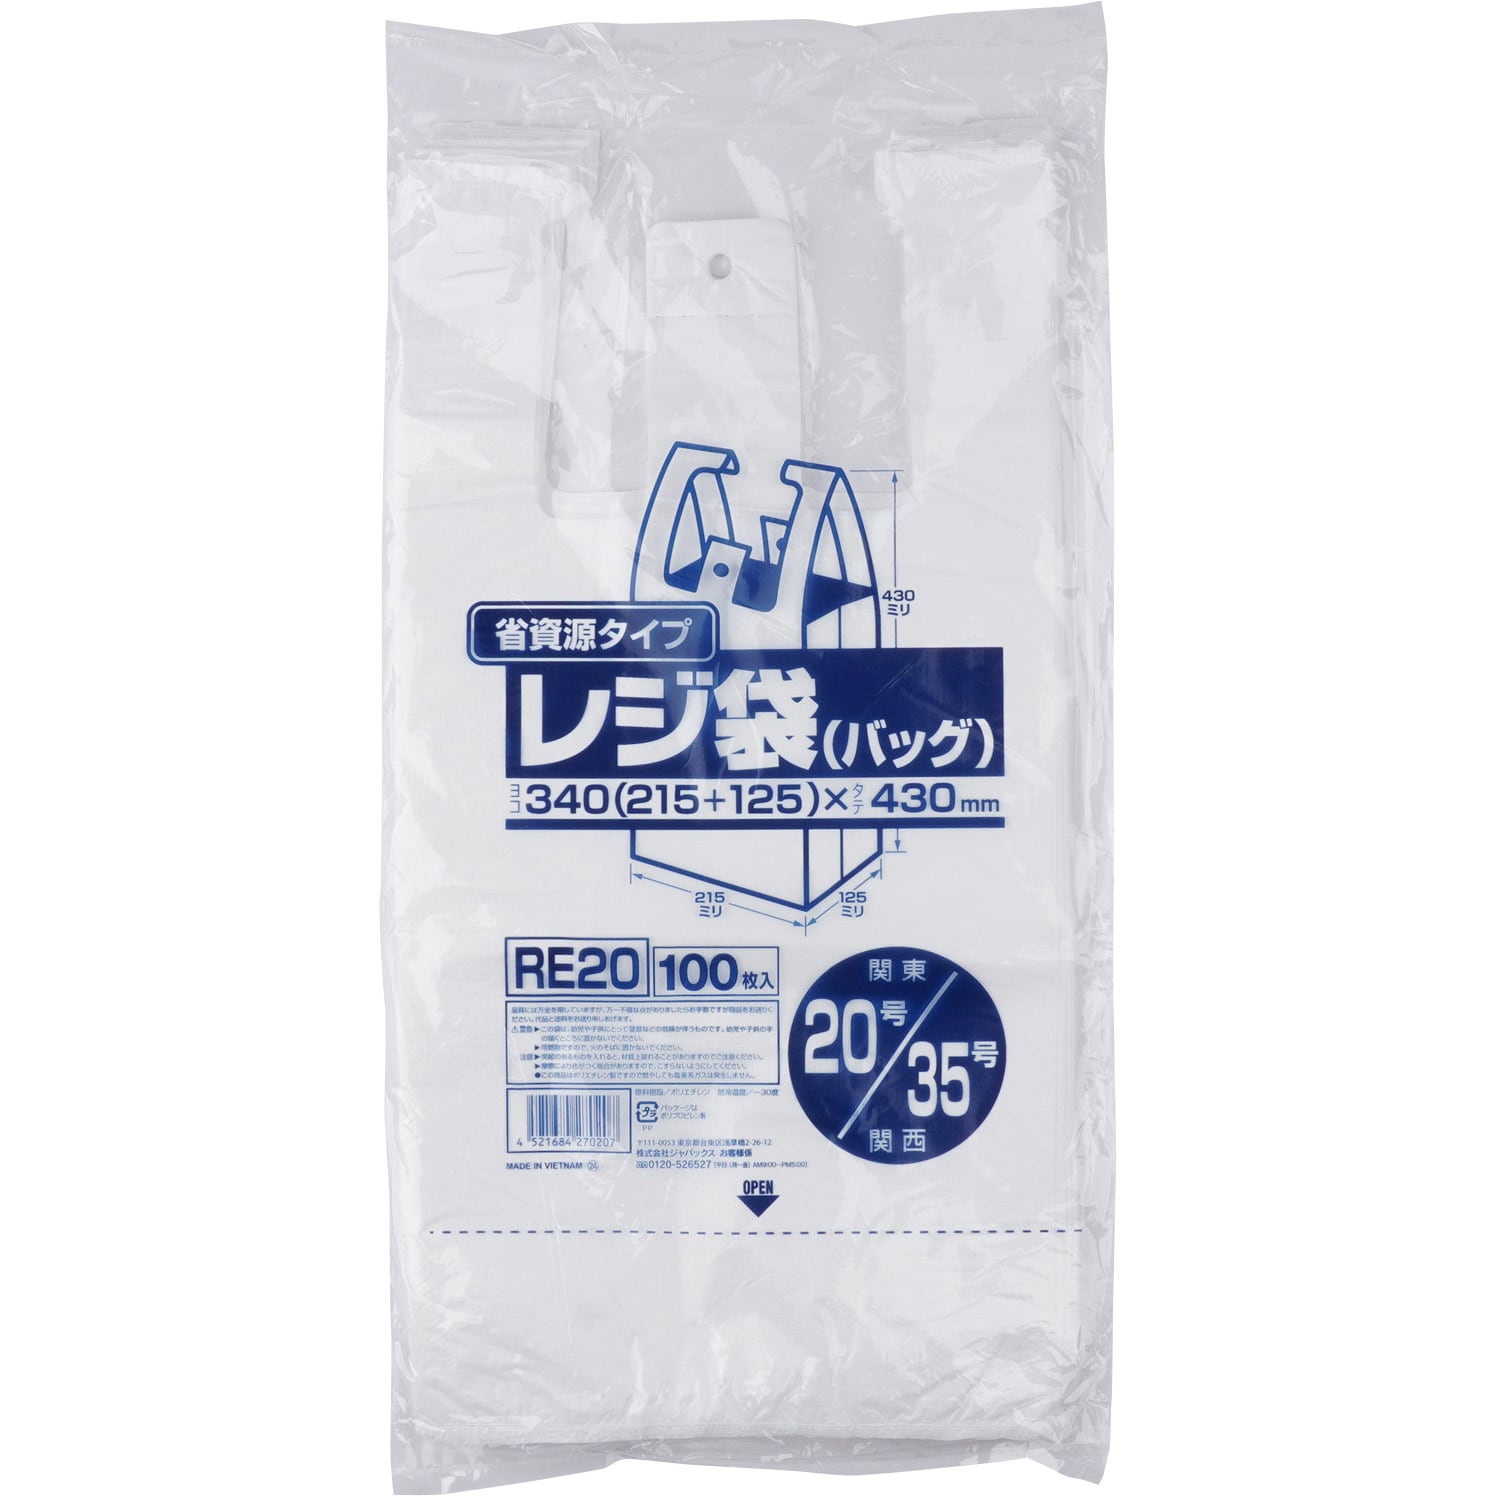 RE20 業務用省資源タイプ レジ袋(乳白色) 1袋(100枚) ジャパックス